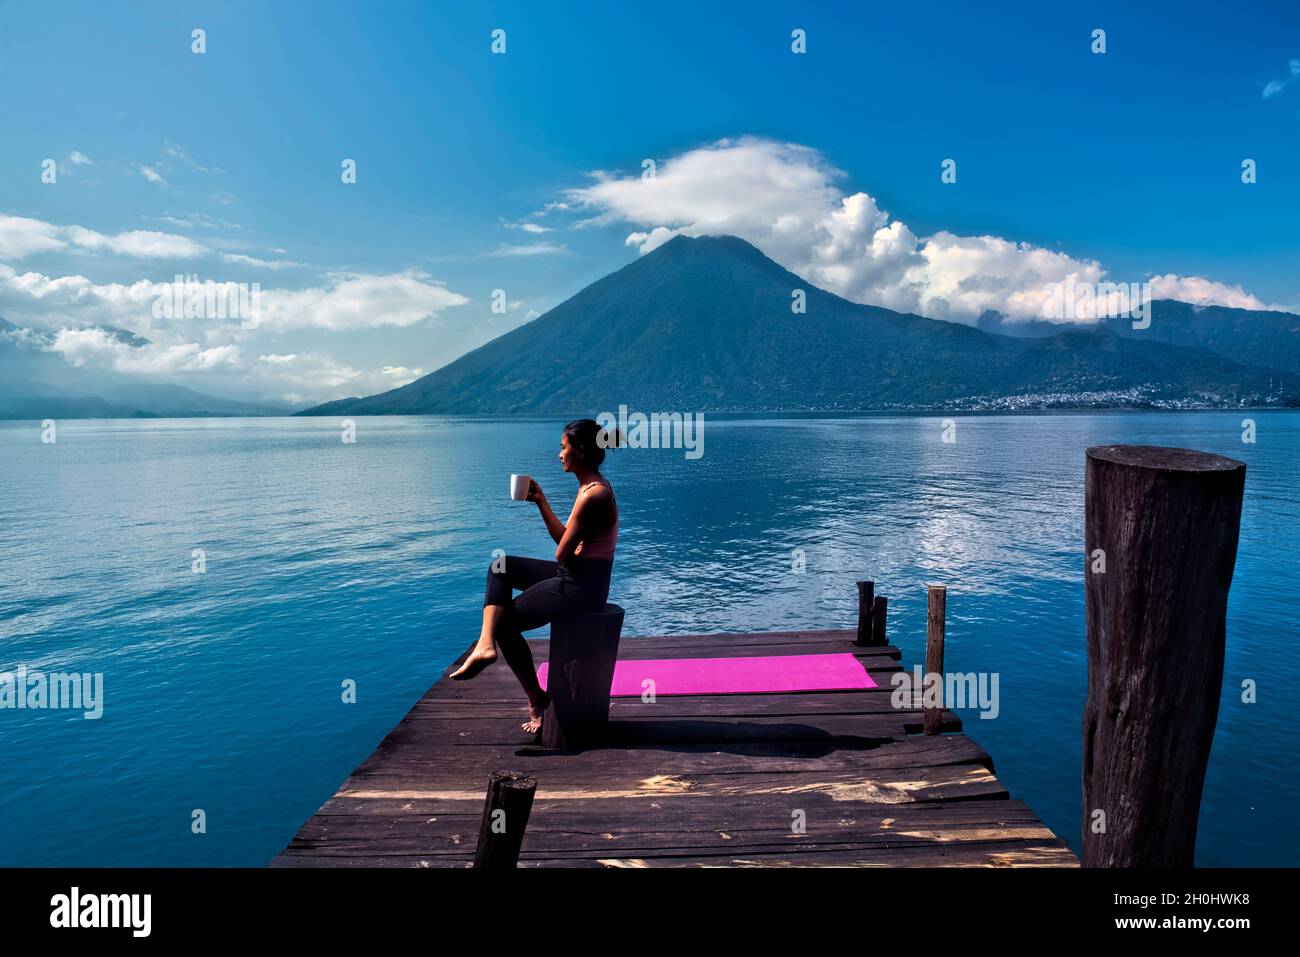 Morning coffee on the dock, San Marcos, Lake Atitlan, Guatemala Stock Photo